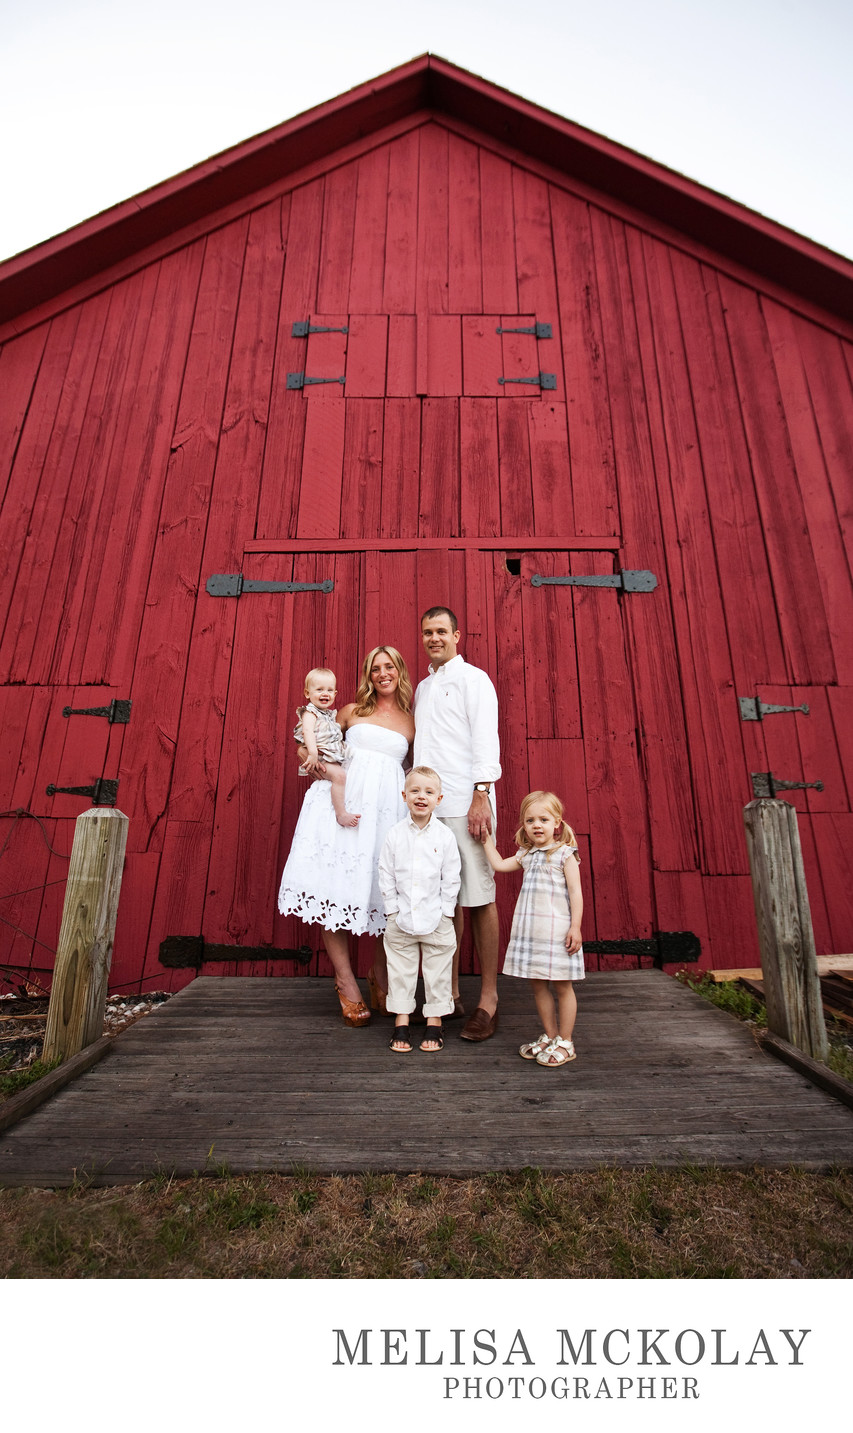 Big Red Barn | Family Portrait | Leelanau County